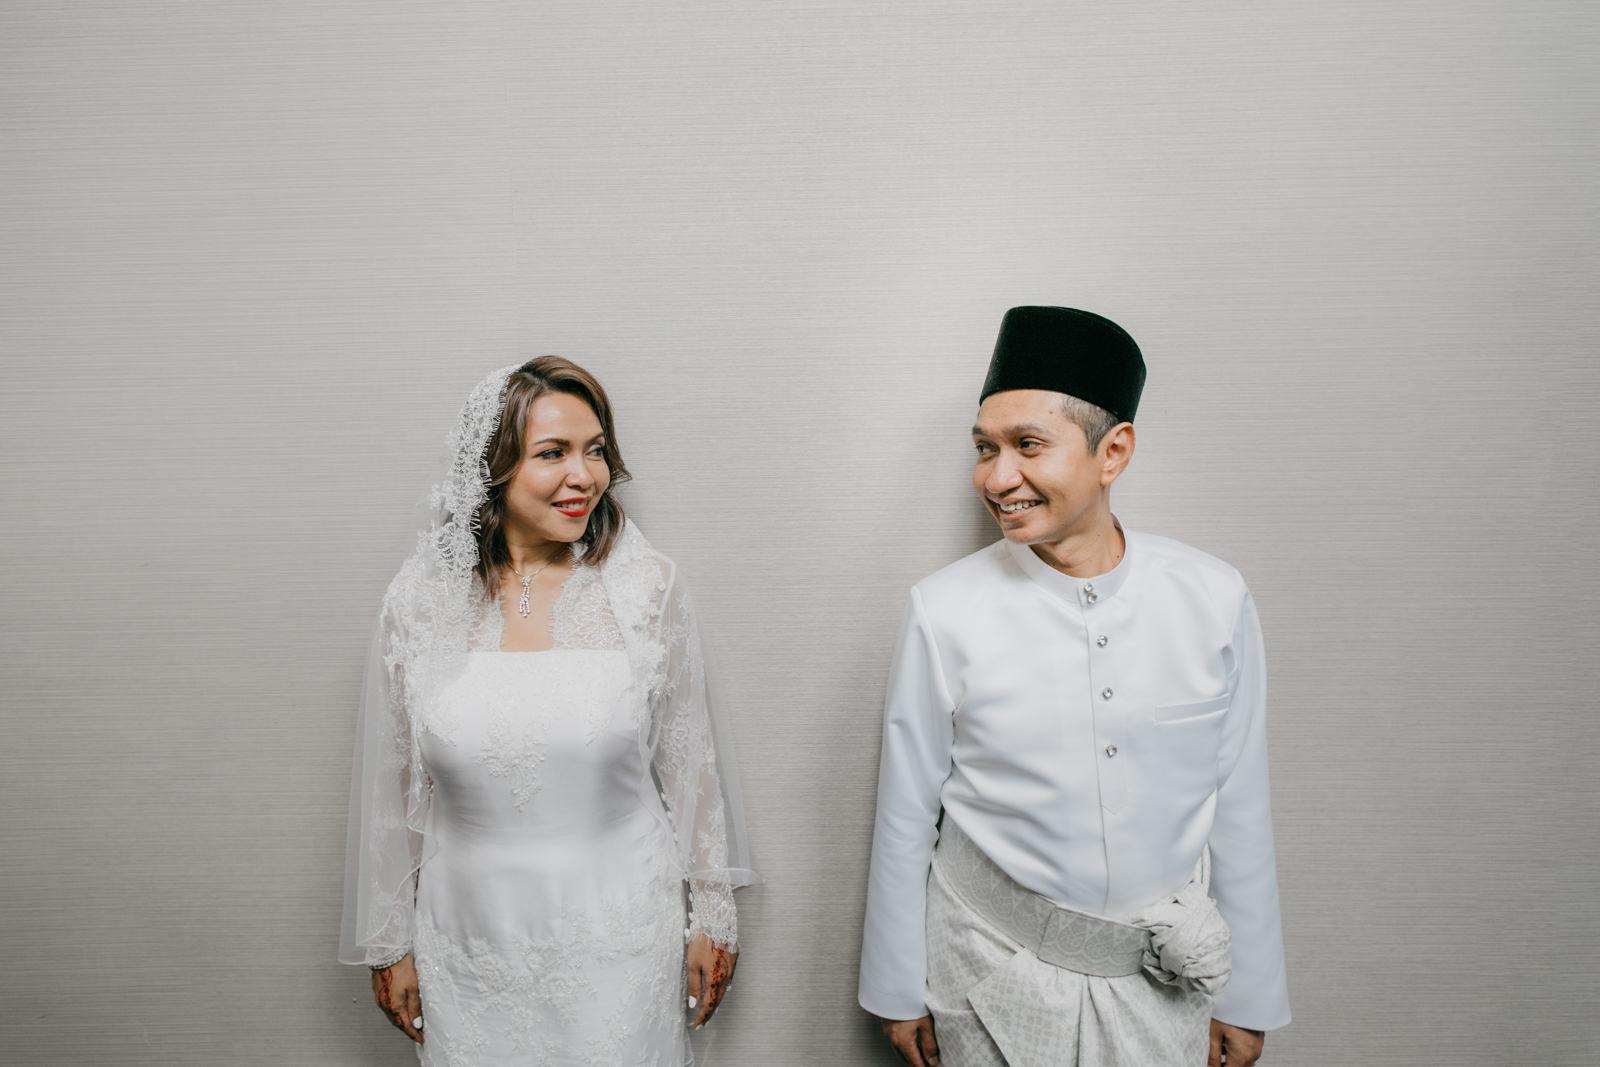 Post wedding portrait Akad Nikah at JW Marriott Kuala Lumpur